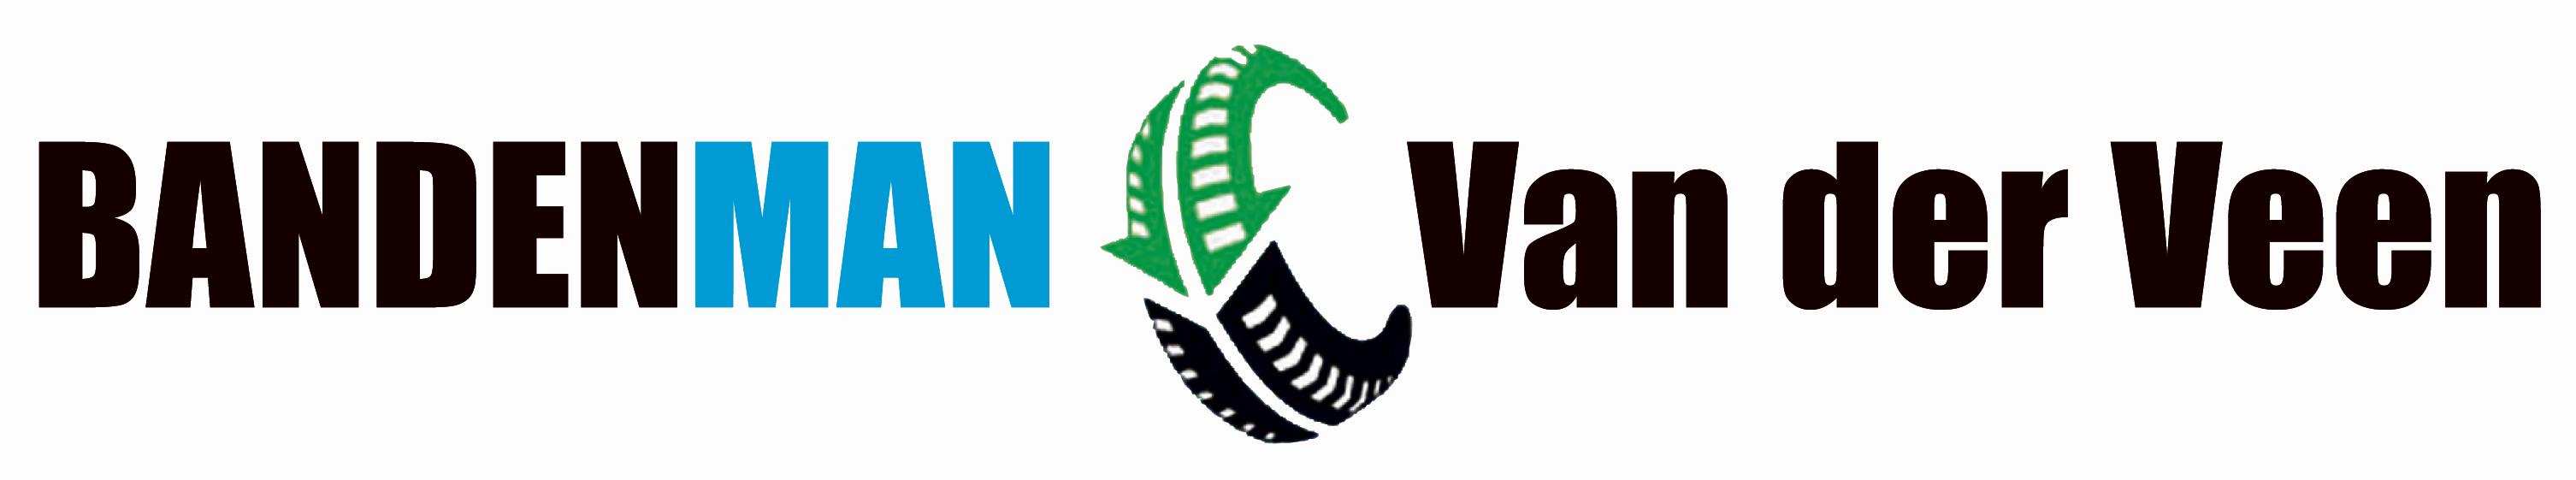 Bandenman Van der Veen logo